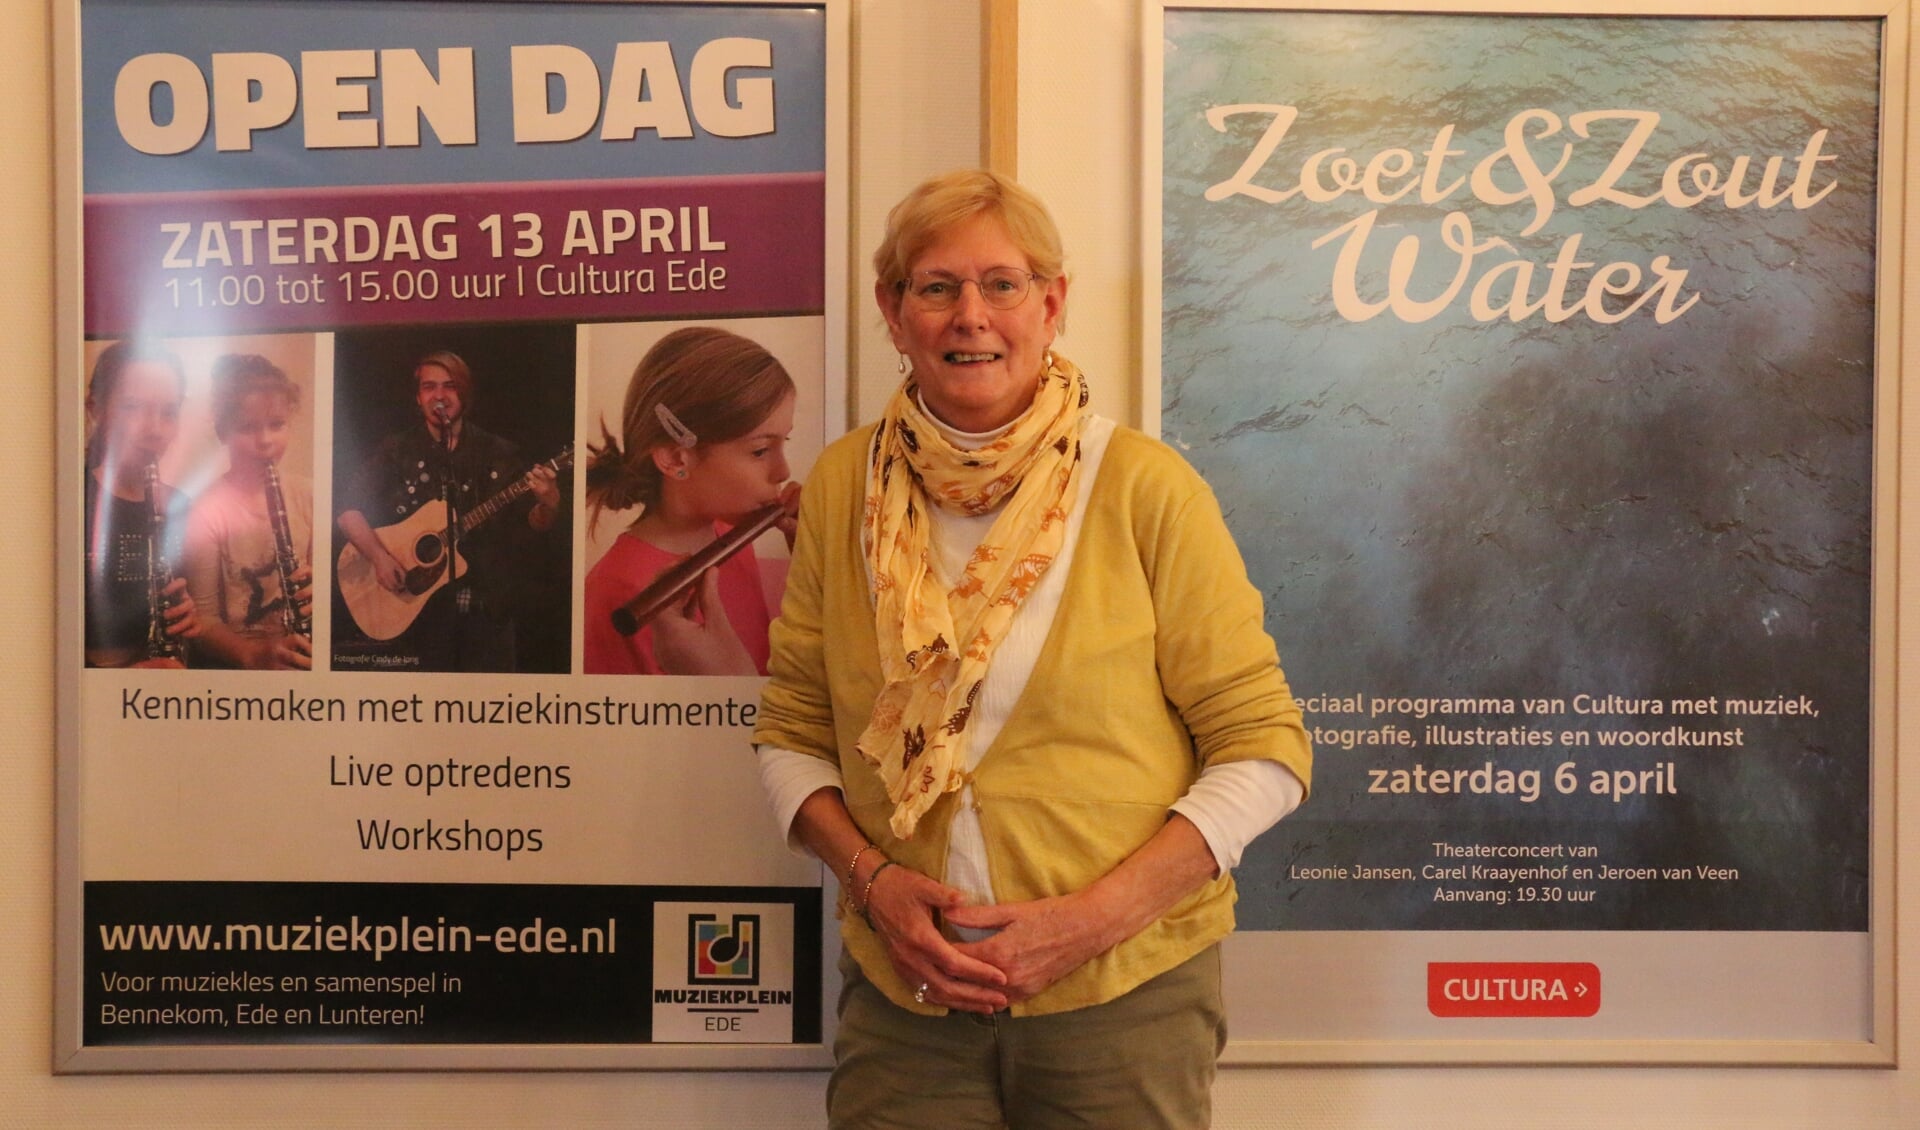 Astrid Reyns voor de posters van de open dag en het theaterconcert met een groot leerlingenorkest.